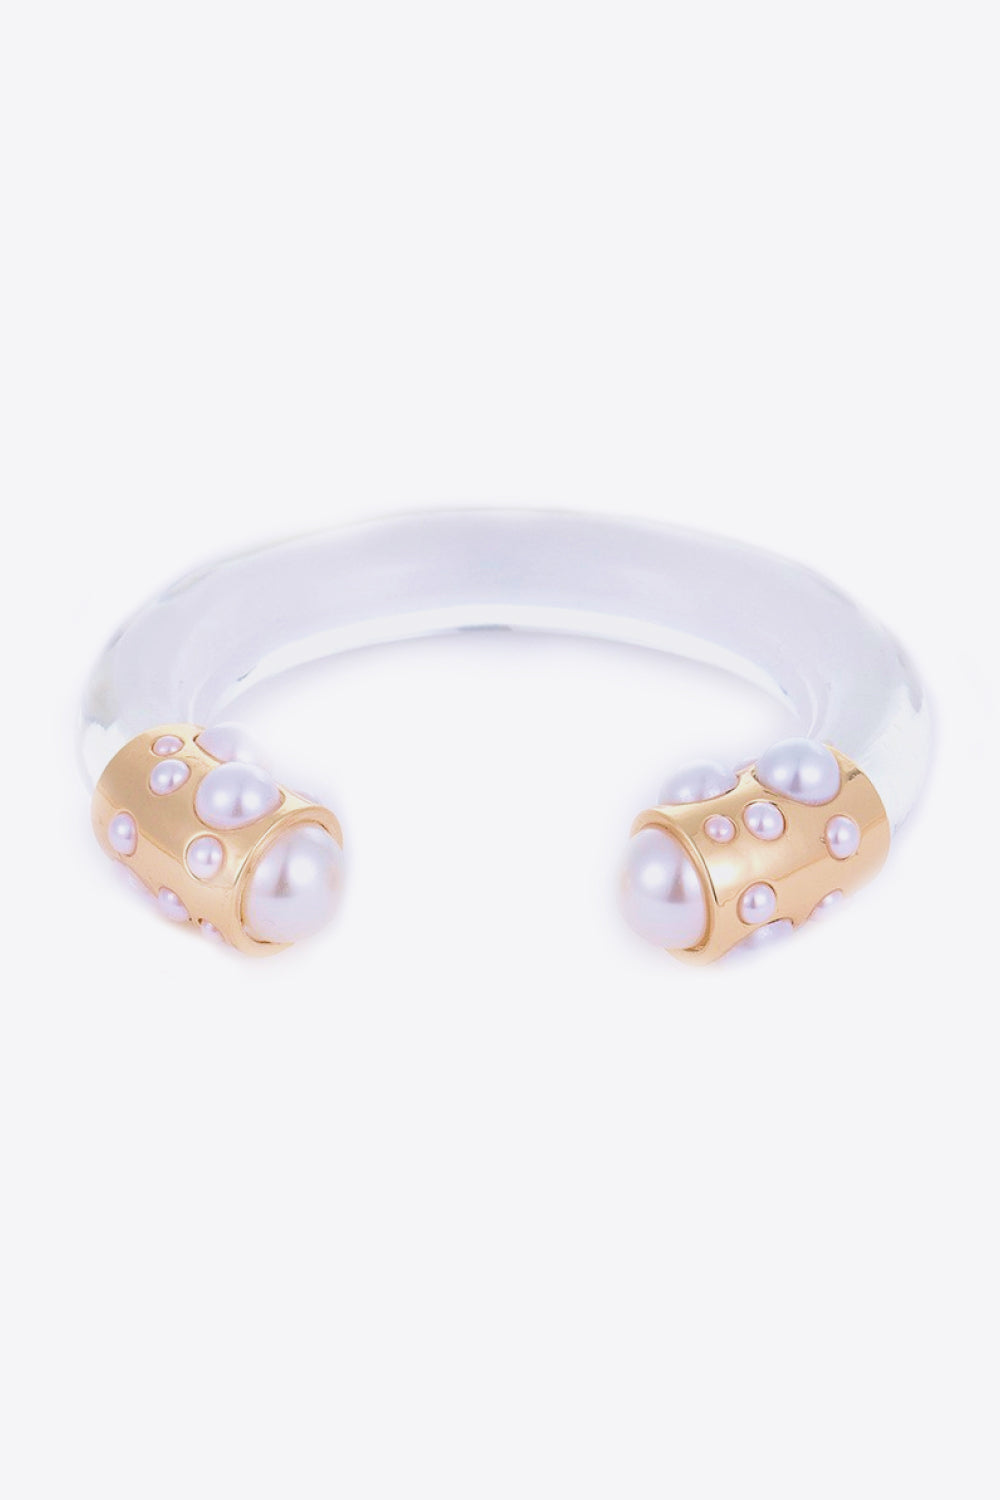 Inlaid Pearl Open Bracelet - Gold / One Size - Women’s Jewelry - Bracelets - 1 - 2024